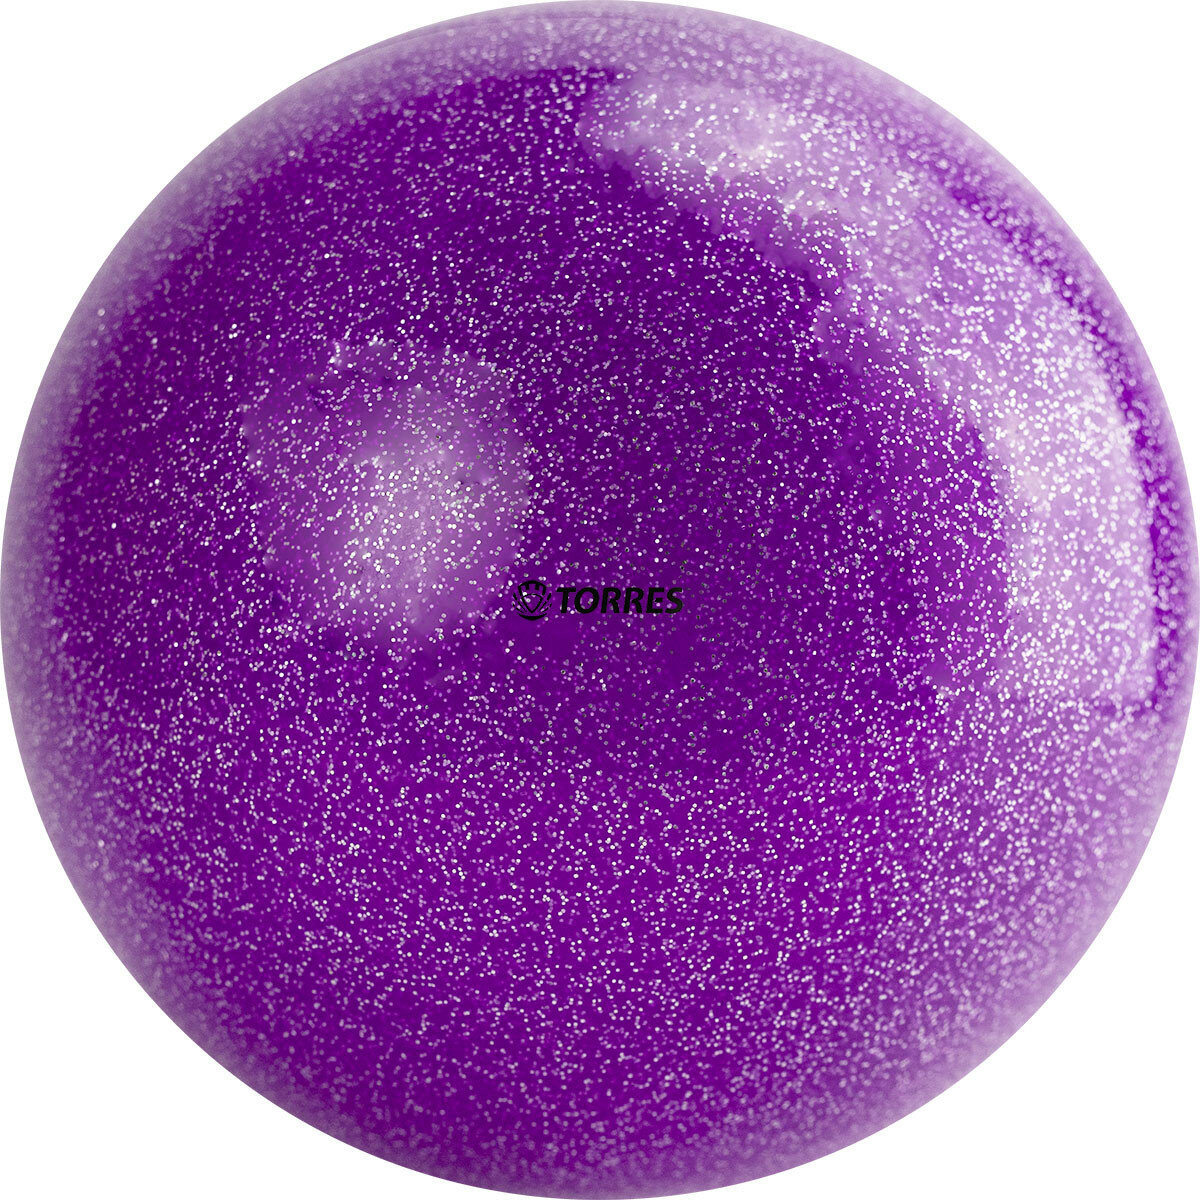 Мяч для художественной гимнастики однотонный Torres Agp-19-07, диаметр 19см, фиолетовый с блестками